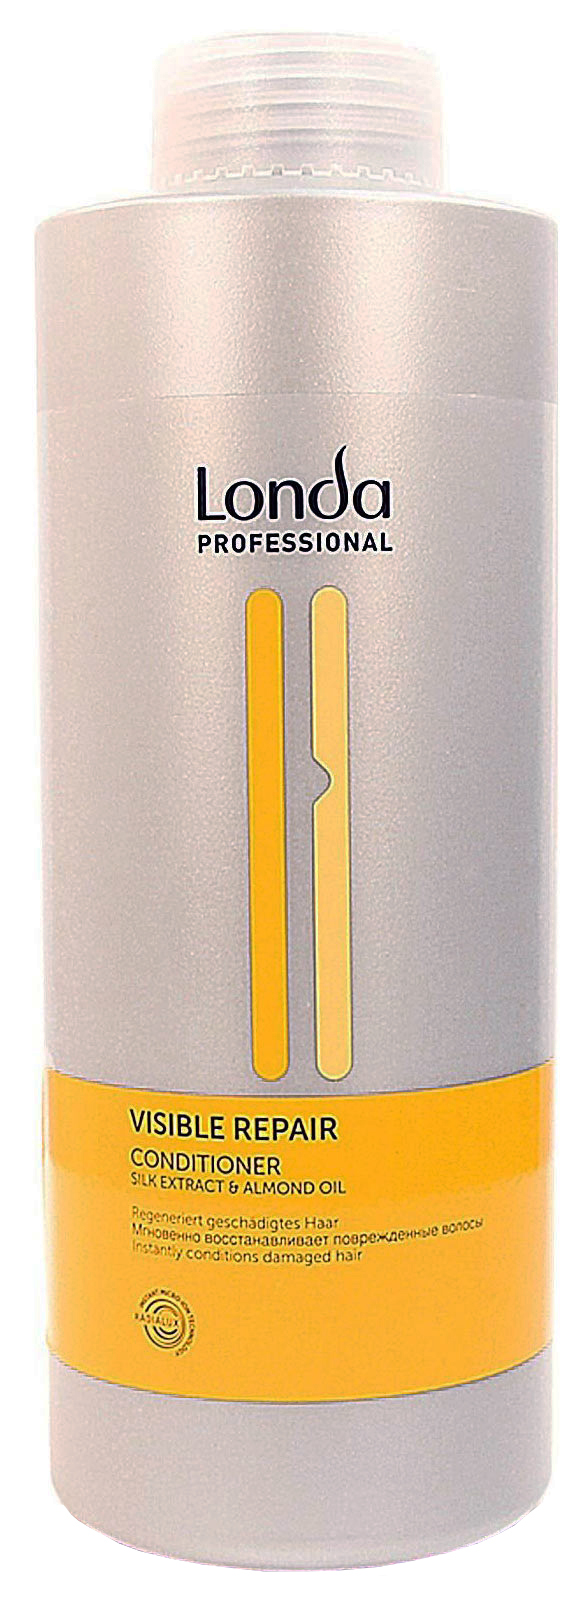 Кондиционер для волос Londa Professional Visible Repair 1000 мл londa шампунь для поврежденных волос visible repair 1000мл